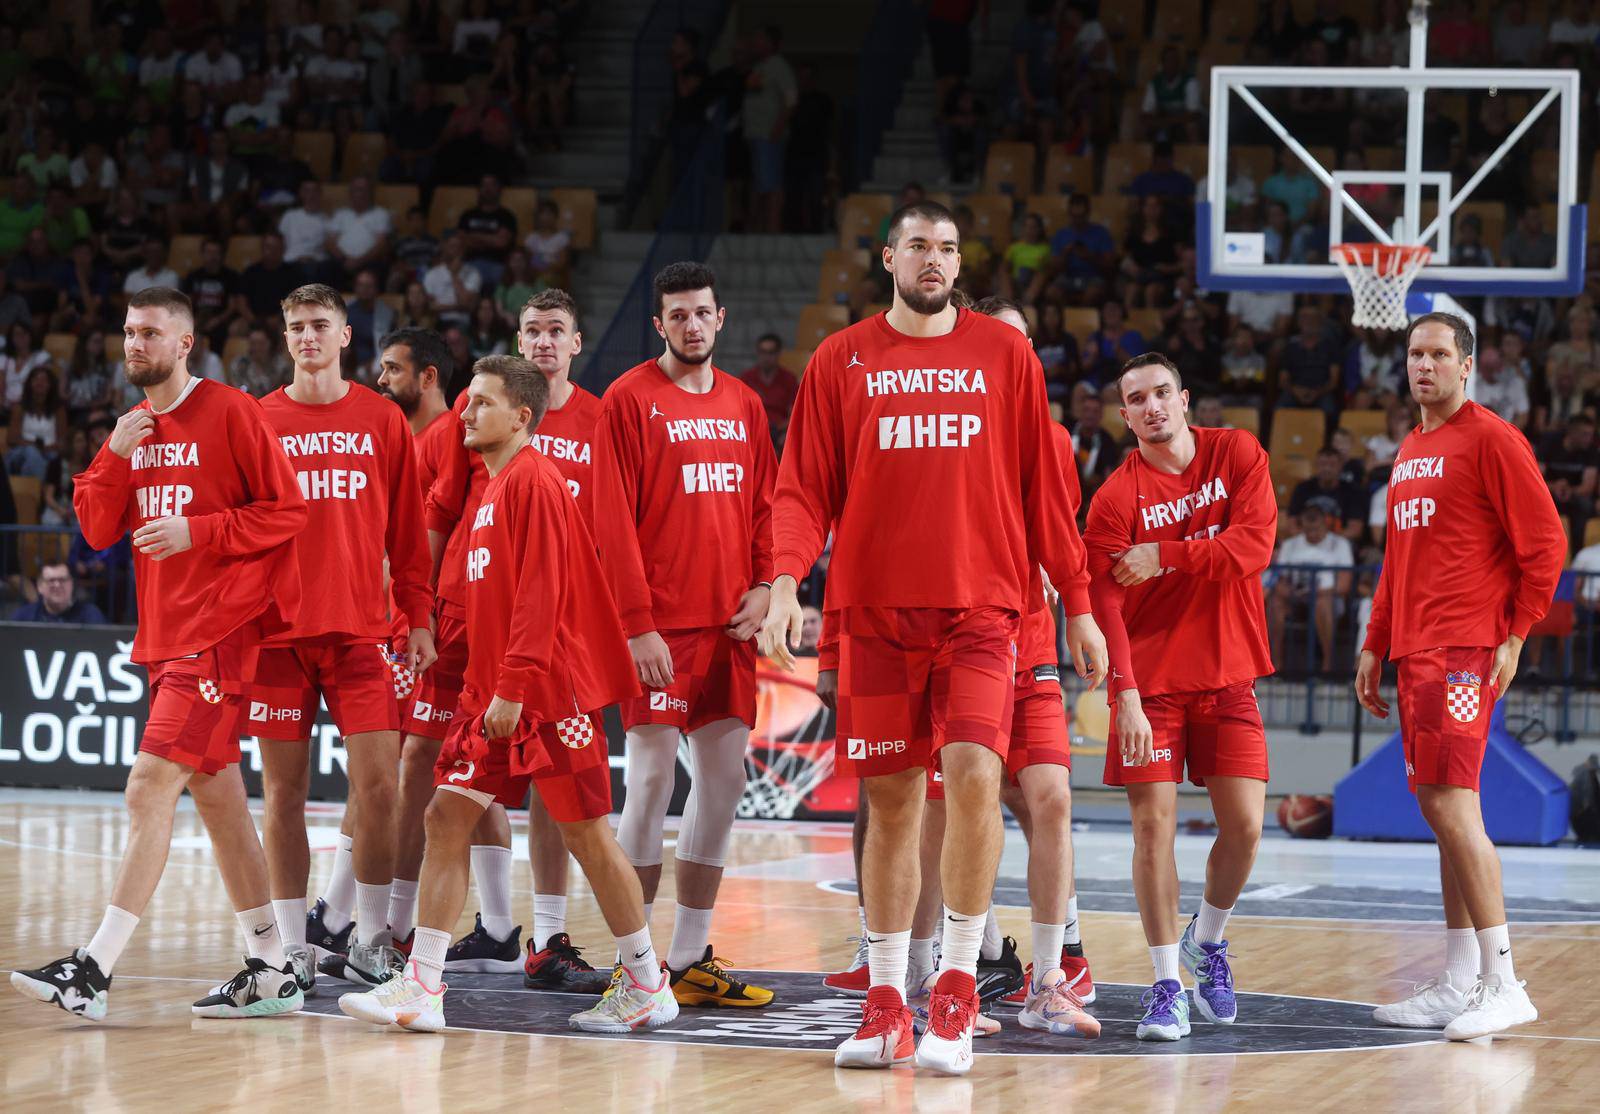 Celje: Košarkaška utakmica između Hrvatske i Slovenije u samoj završnici priprema za Eurobasket